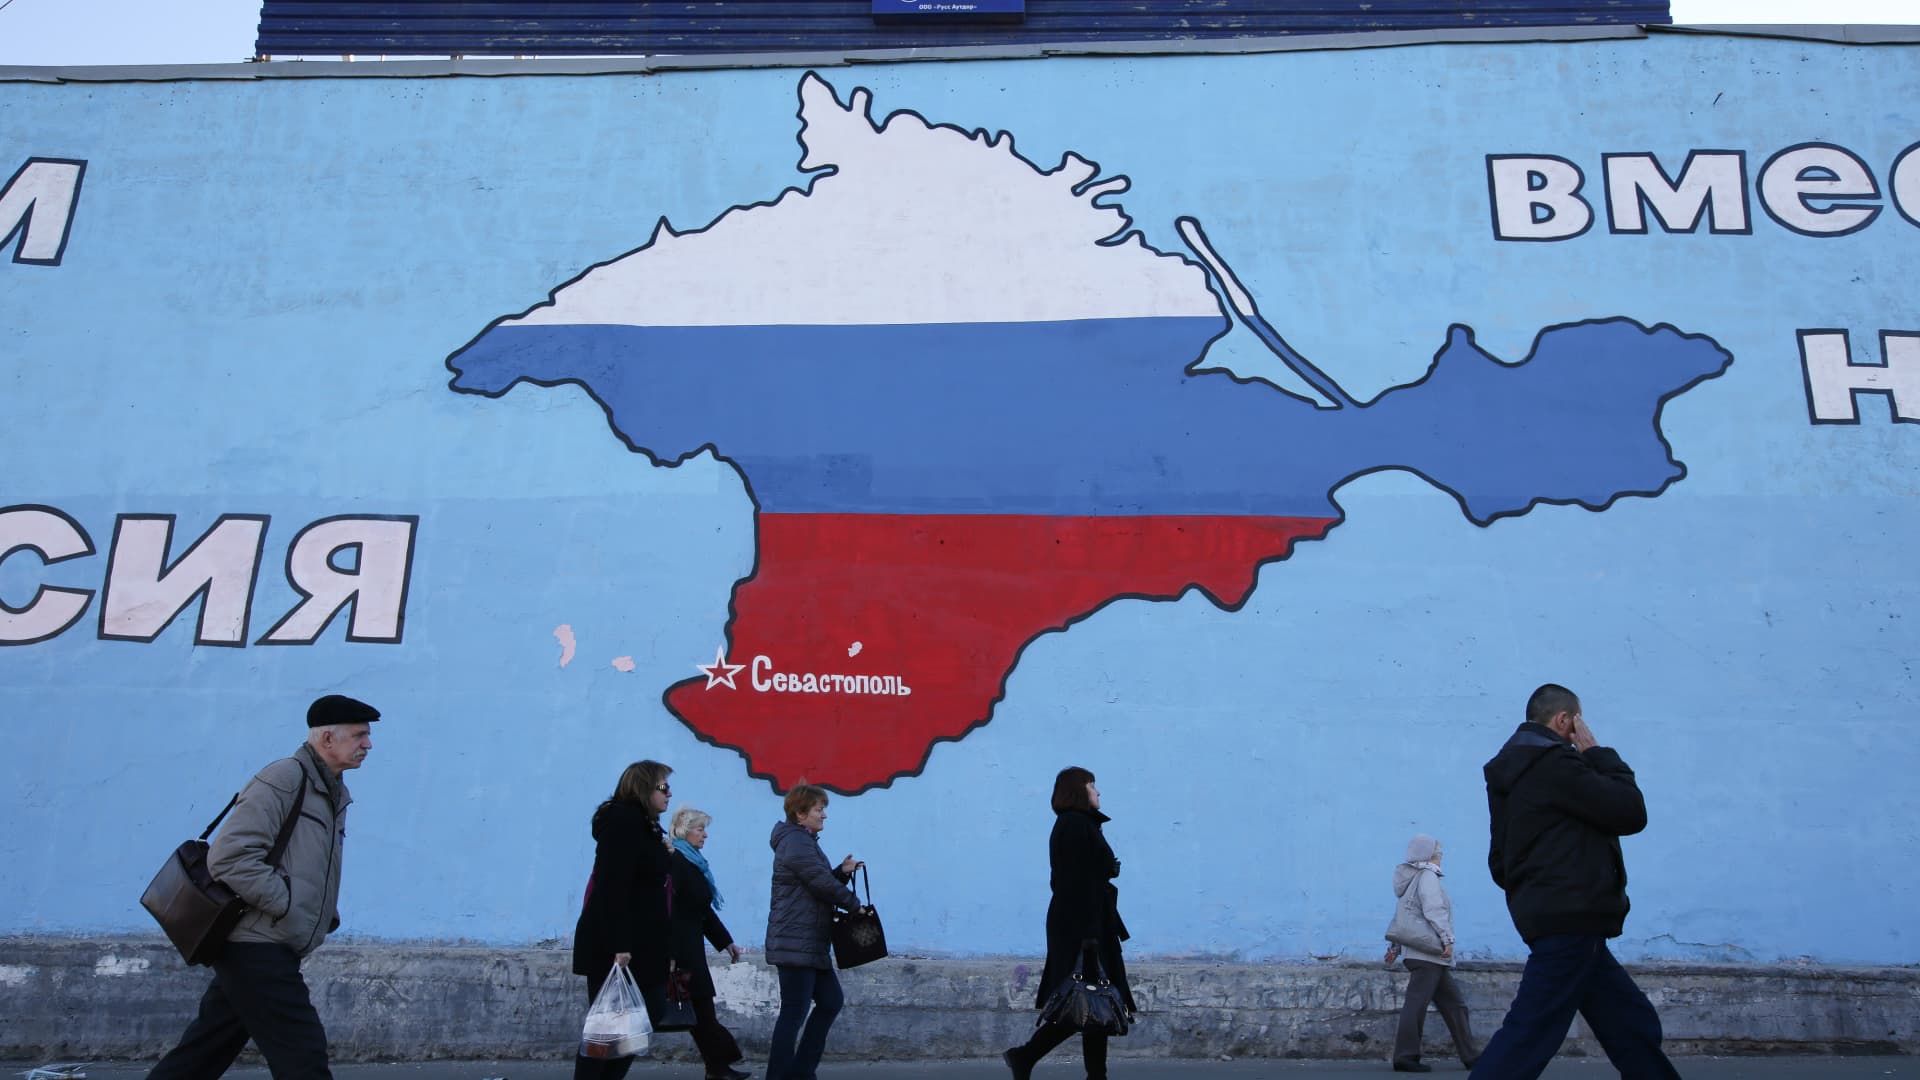 यूक्रेन युद्ध लाइव अपडेट: बखमुत ‘सभी बाधाओं के खिलाफ पकड़’, ज़ेलेंस्की कहते हैं;  रूस ने विवादित आधिकारिक ‘क्षेत्रीय अखंडता’ वाले मानचित्रों पर प्रतिबंध लगाने का समर्थन किया